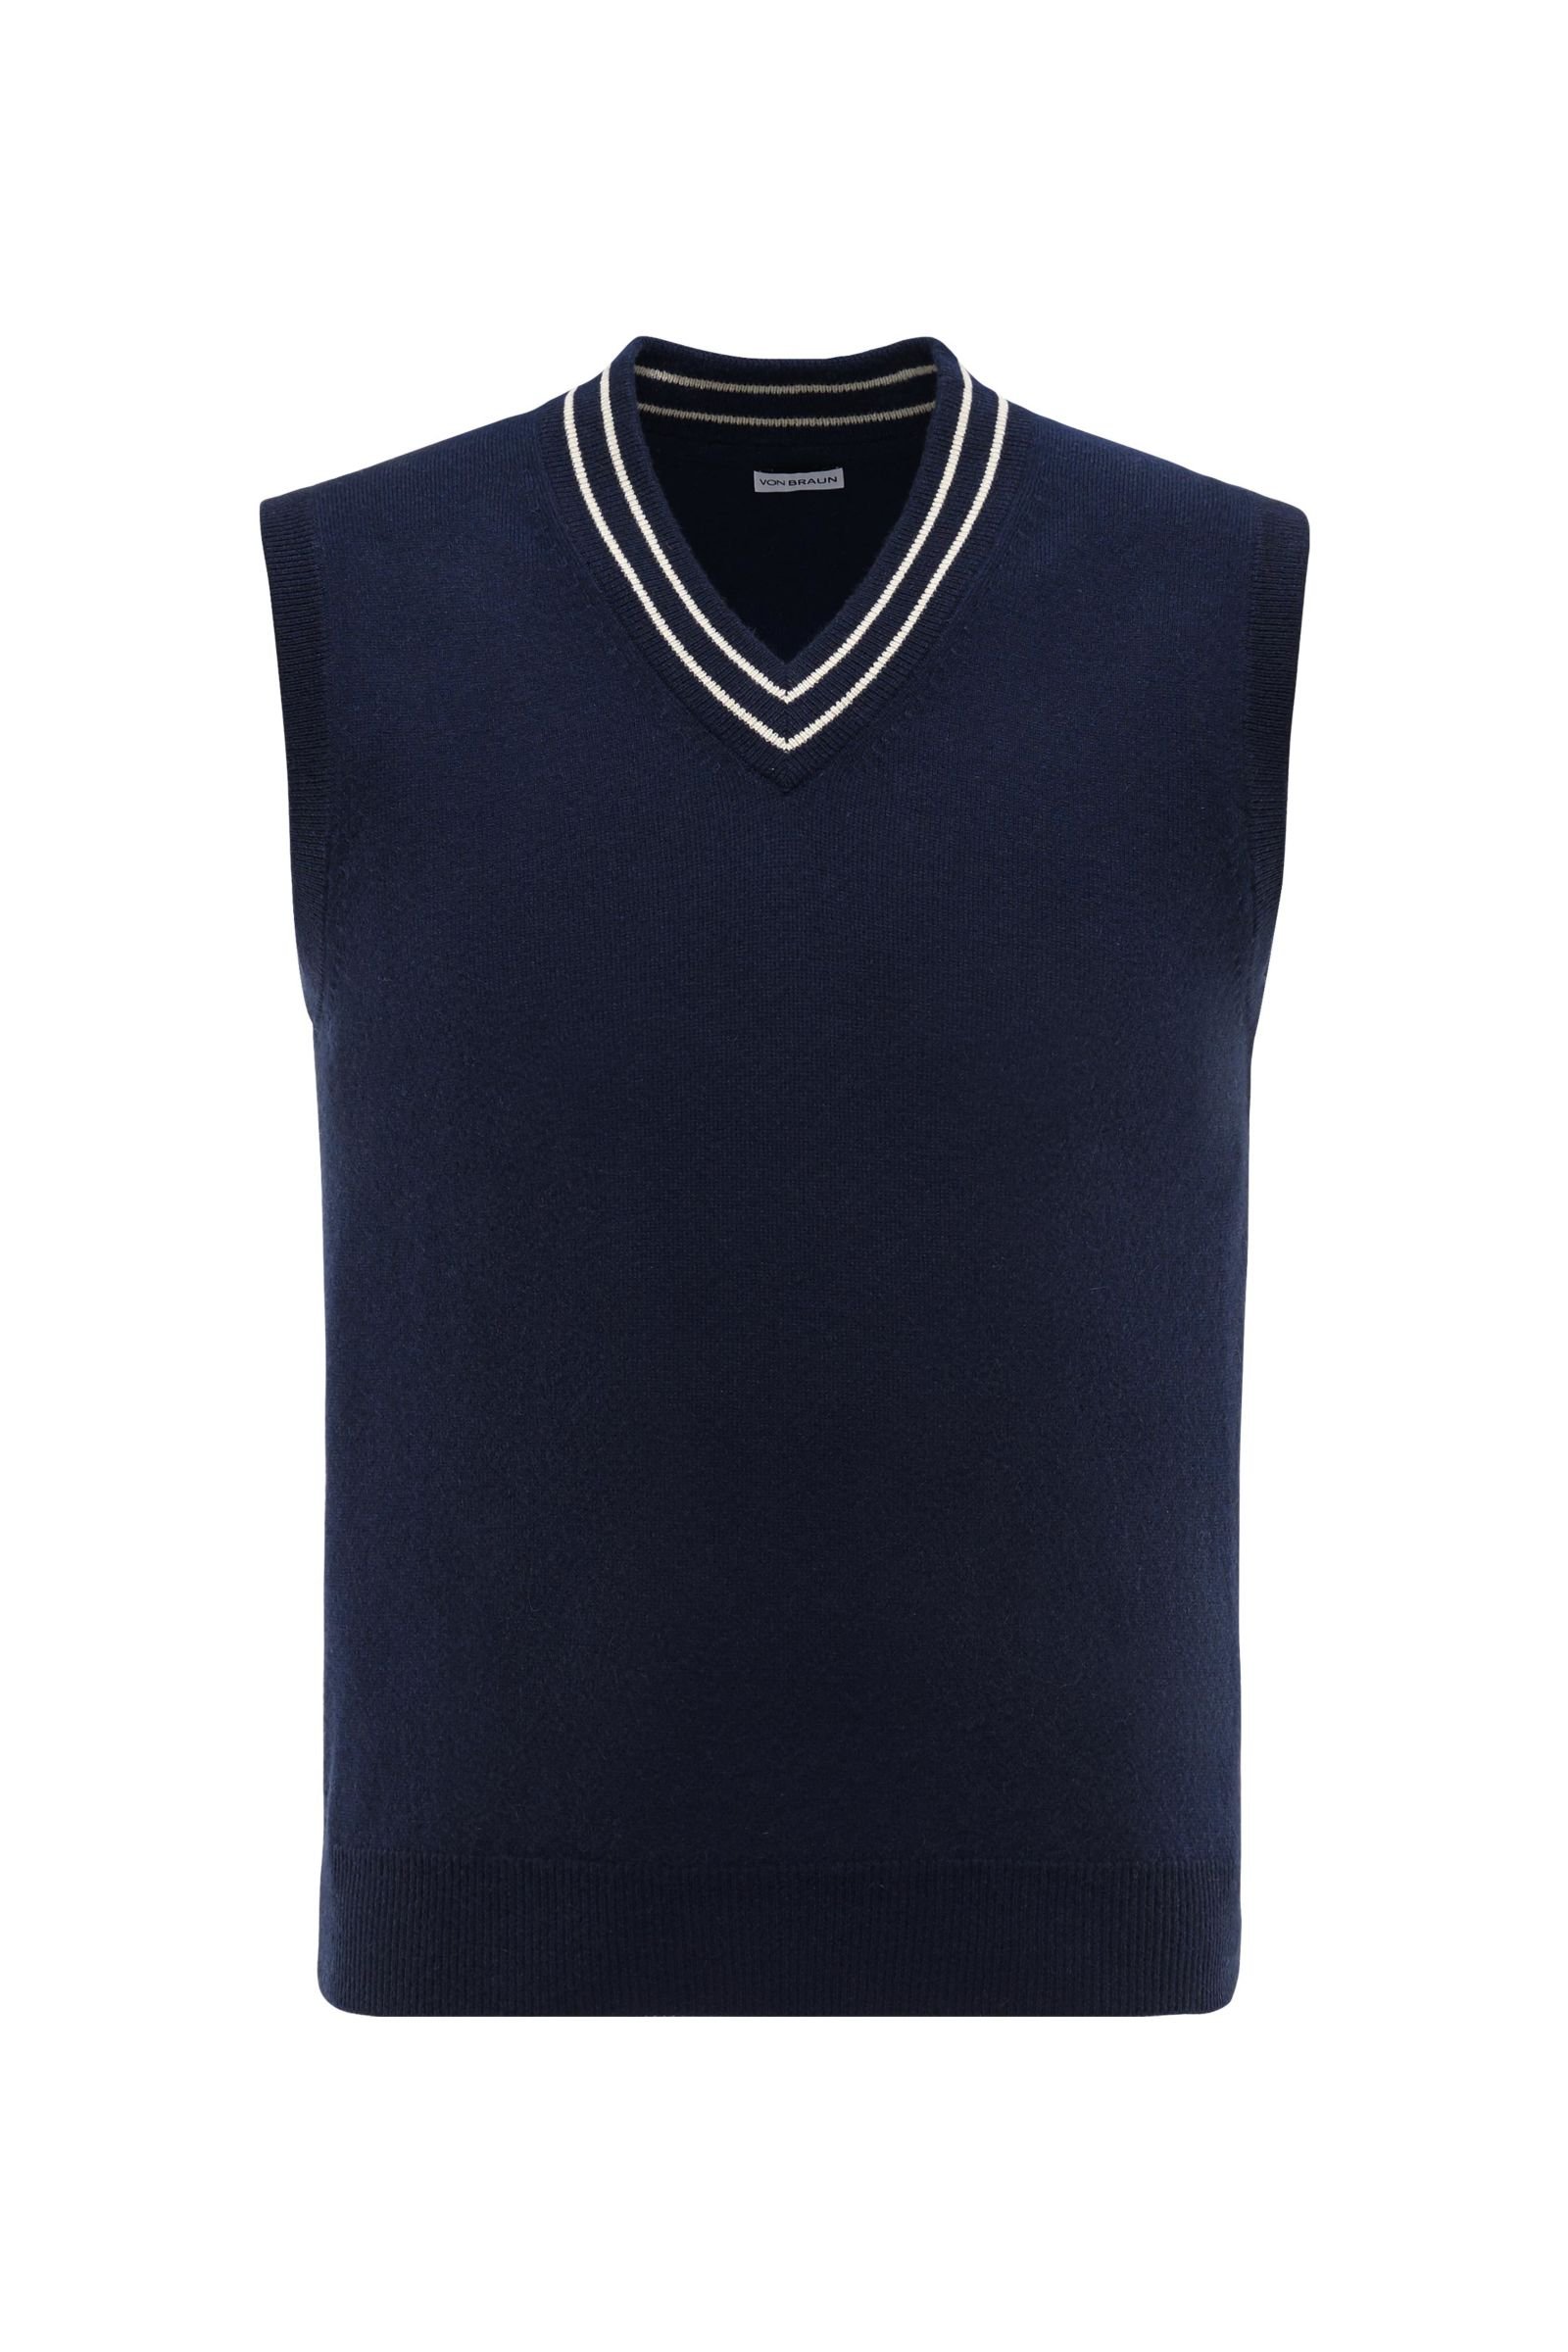 Cashmere V-neck sweater vest in dark blue